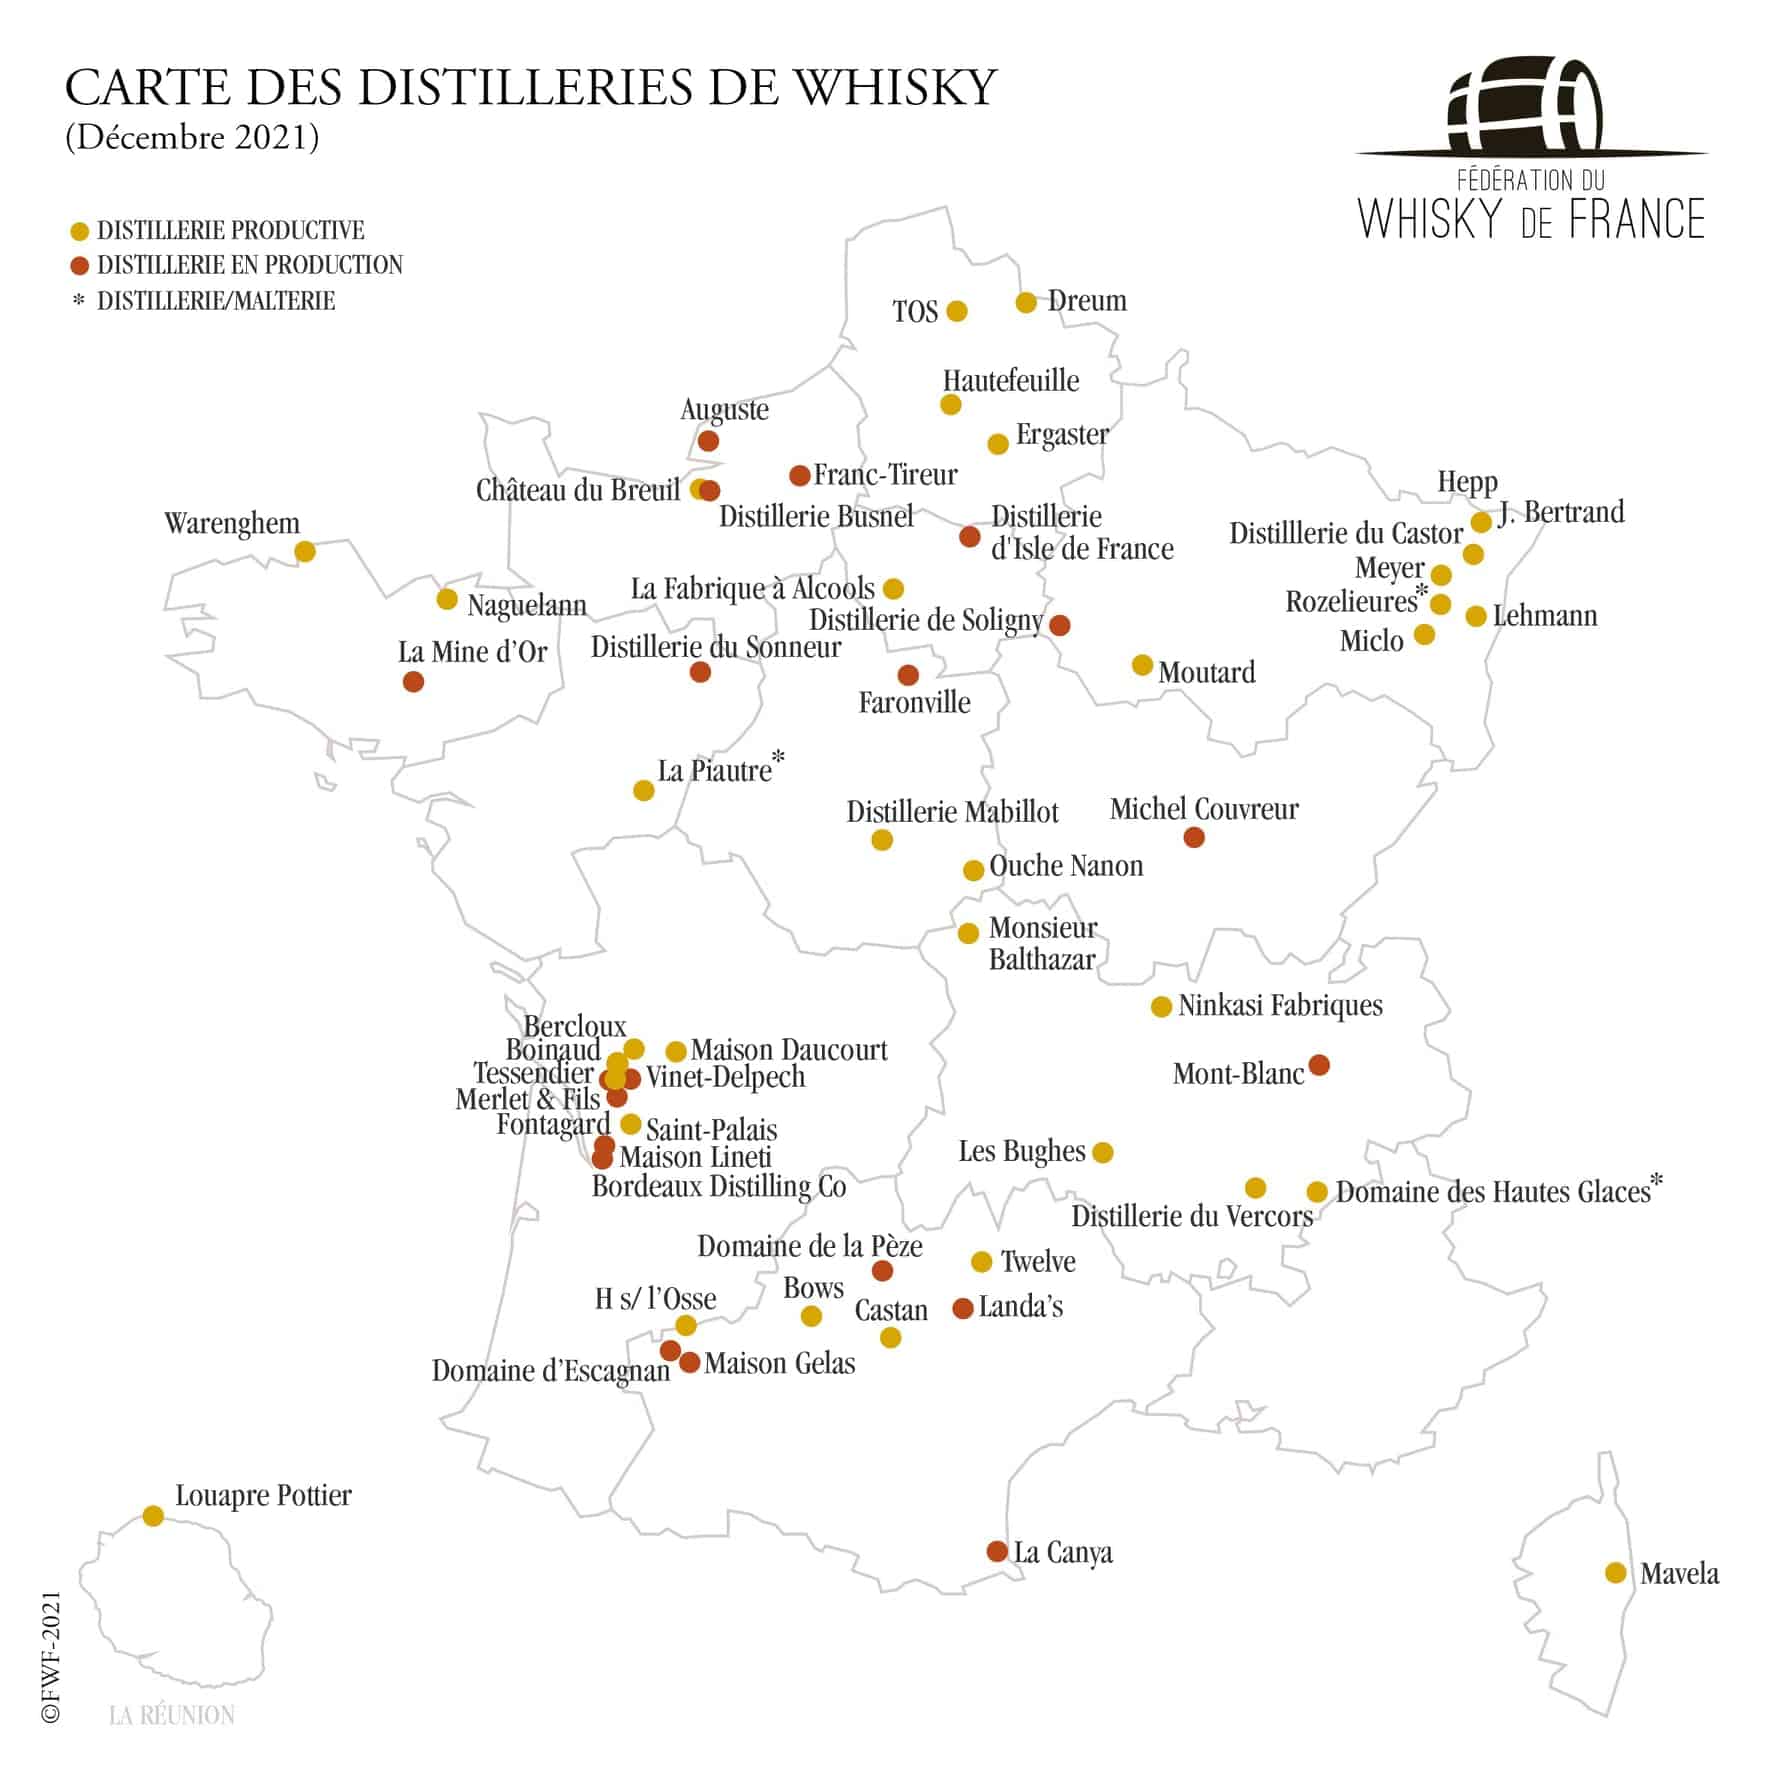 Whisky de France : la carte des distilleries et marques (décembre 2021)